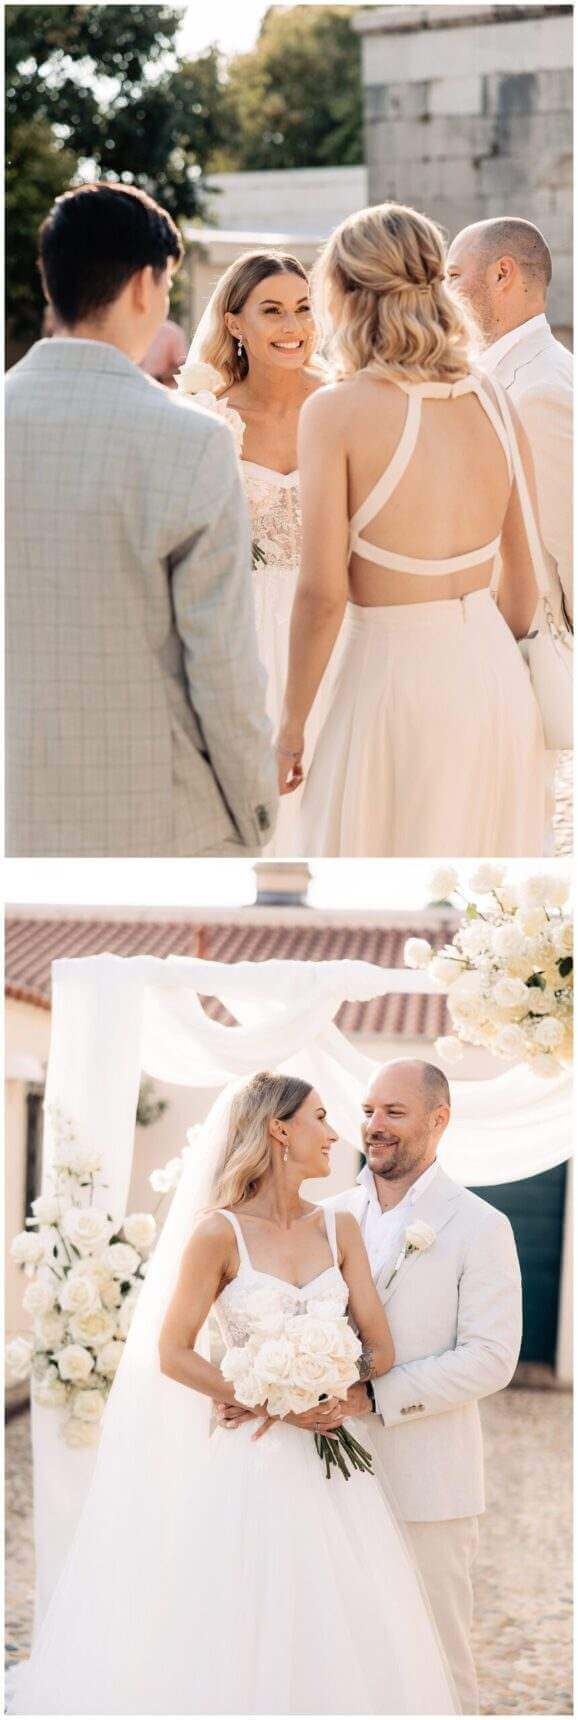 Braut lacht und Brautpaar schaut sich verliebt an bei Hochzeit in Kastell in Kroatien